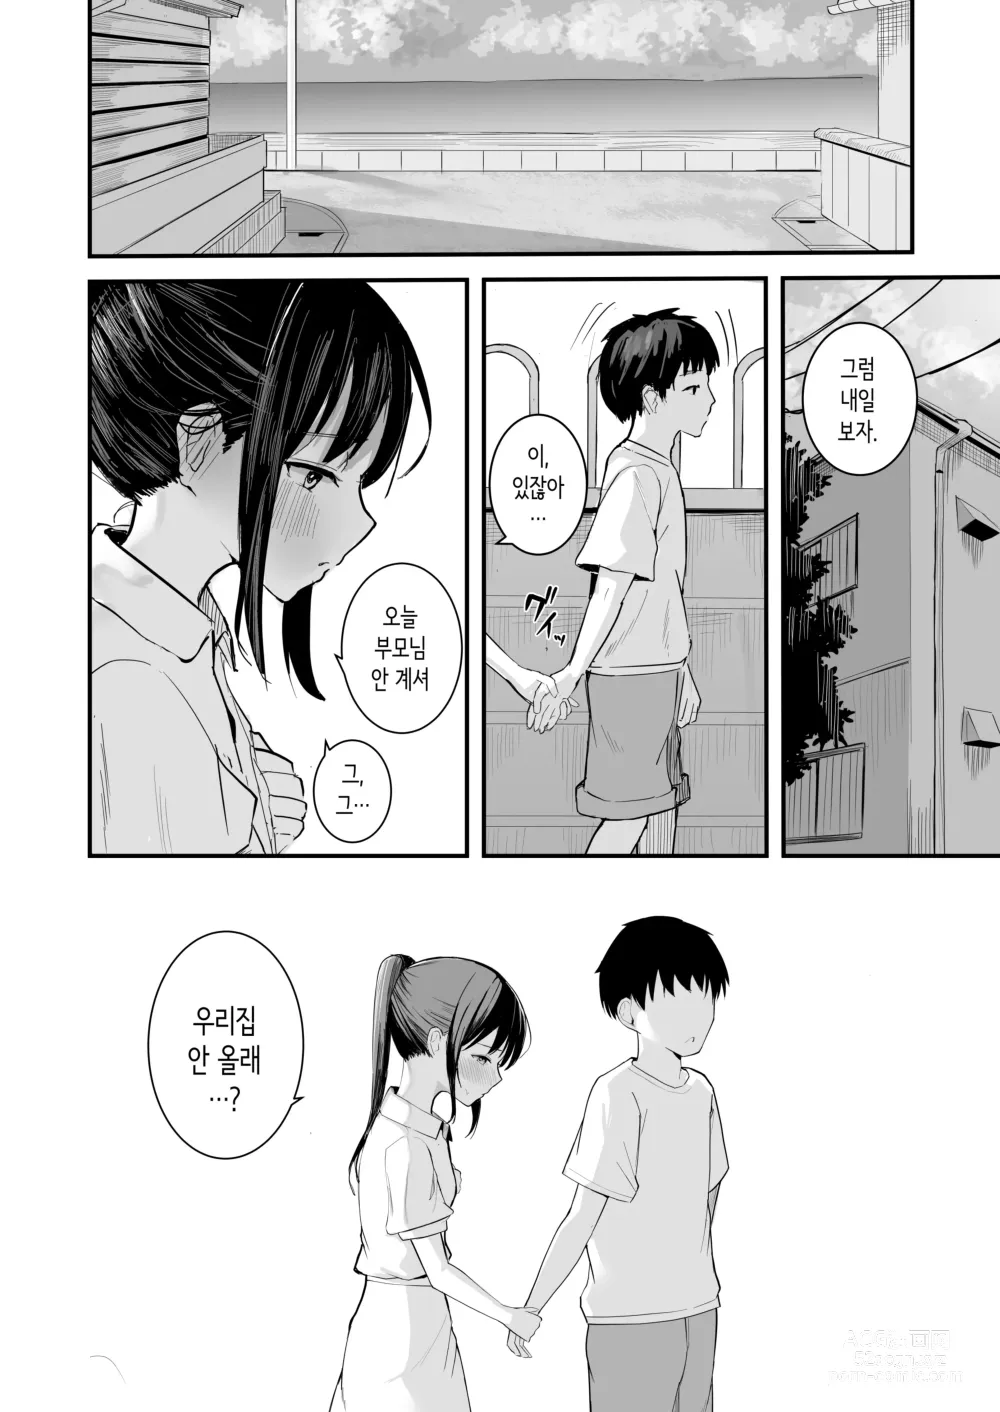 Page 16 of doujinshi 청춘을 재시작할 수 있다면 이번에야말로 좋아했던 동급생과 사귀어서 반드시 미친듯이 섹스하고 싶다.